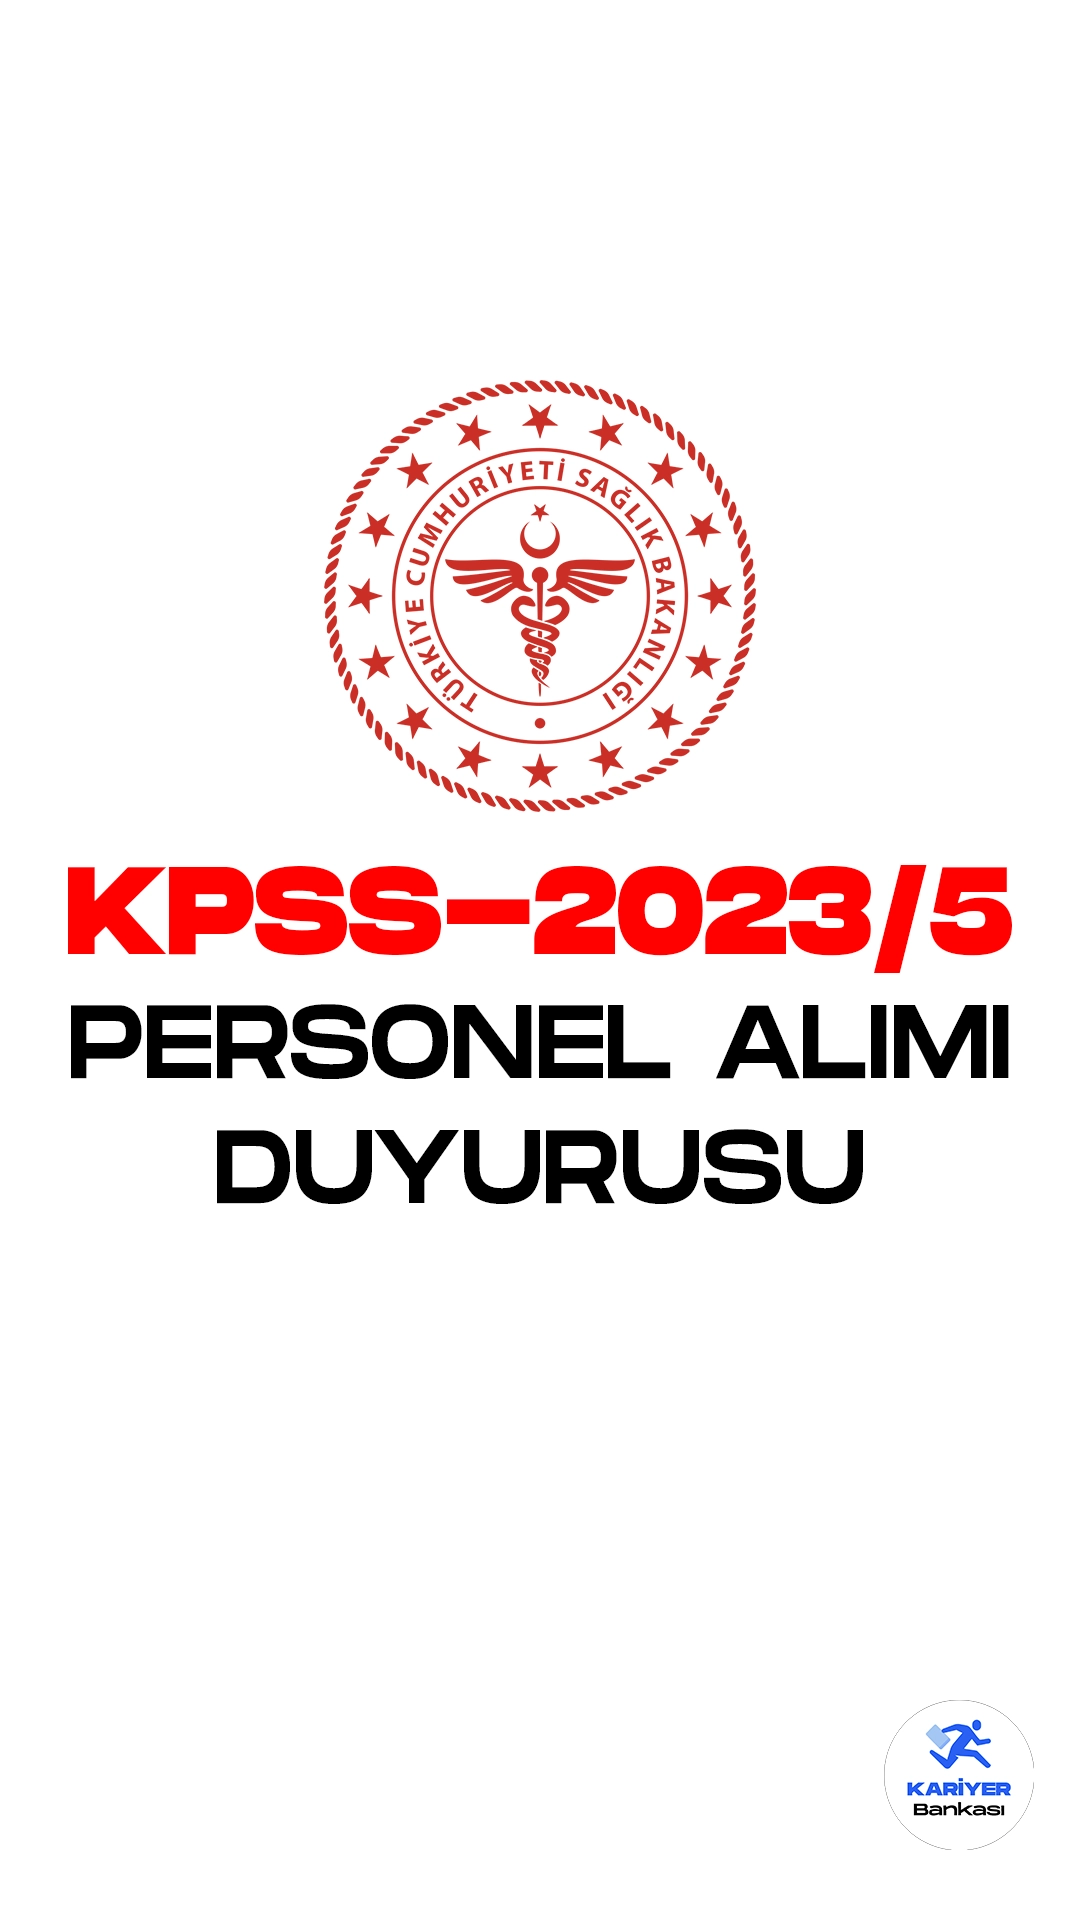 Sağlık Bakanlığı Yönetim Hizmetleri Genel Müdürlüğü resmi sayfasından KPSS-2023/5 sözleşmeli personel alımı hakkında duyuru yayımlandı.